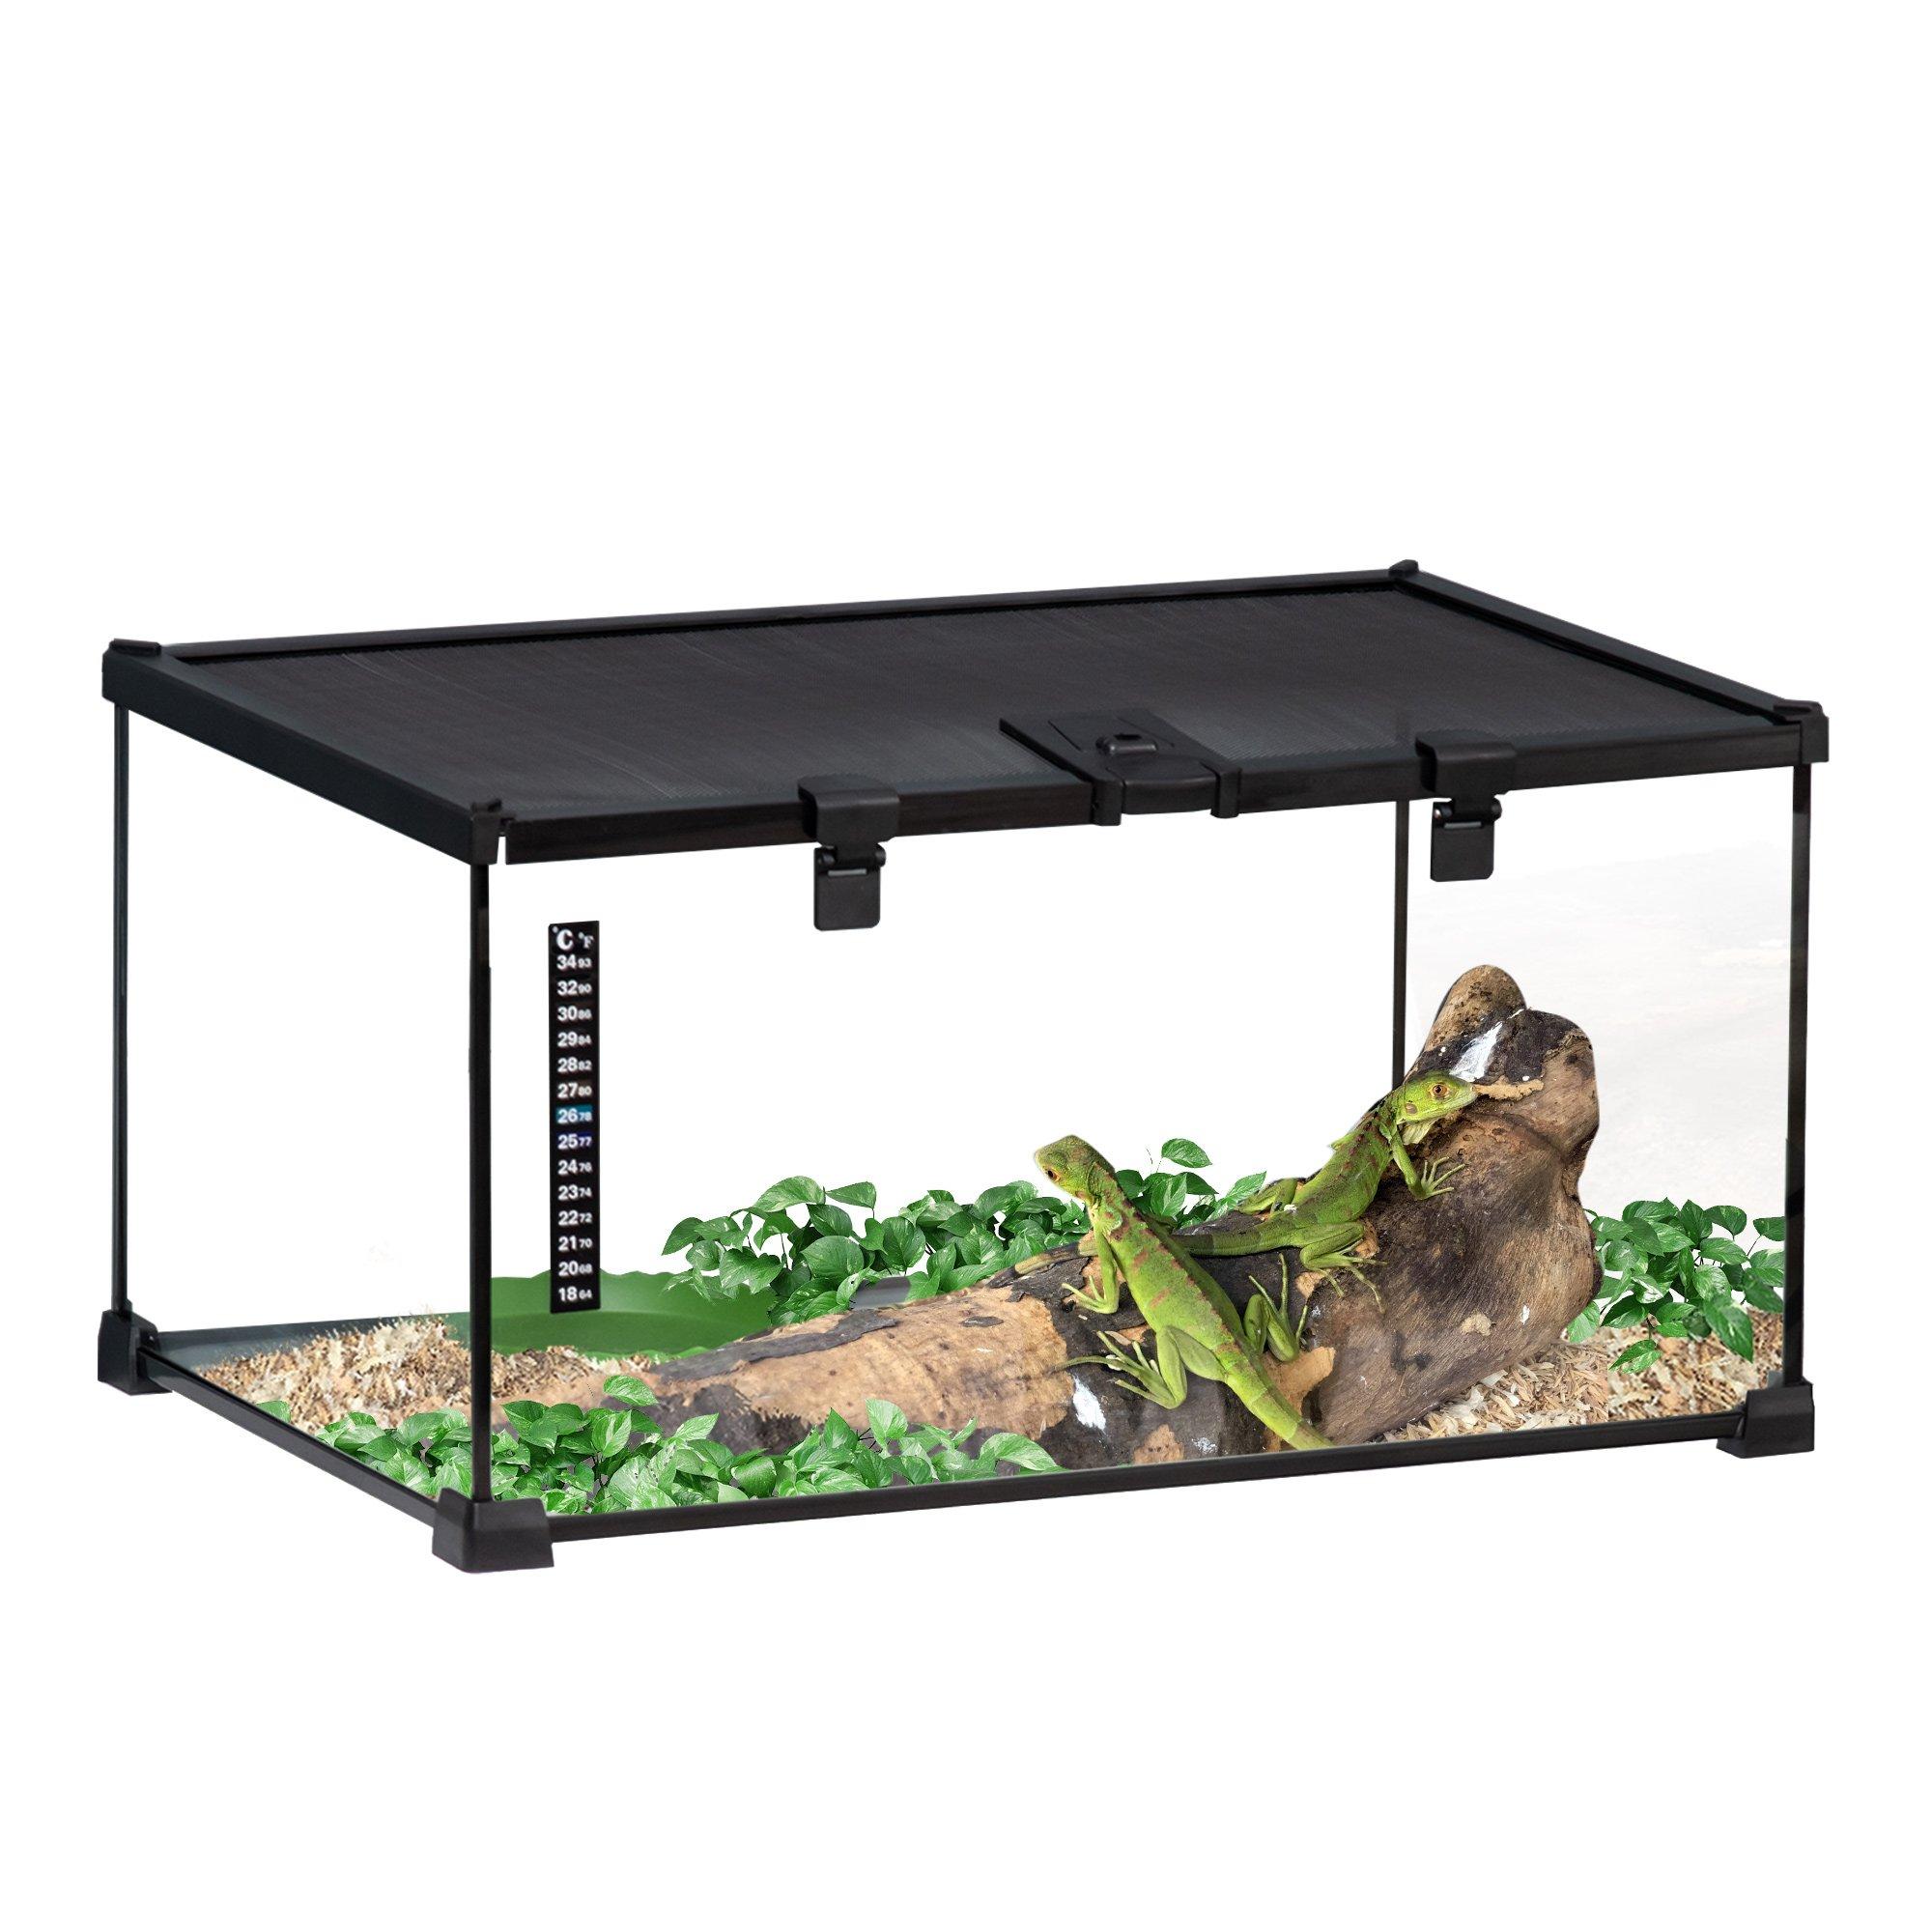 Reptile Terrarium Breeding Tank for Lizards, Horned Frogs, Snakes, Black